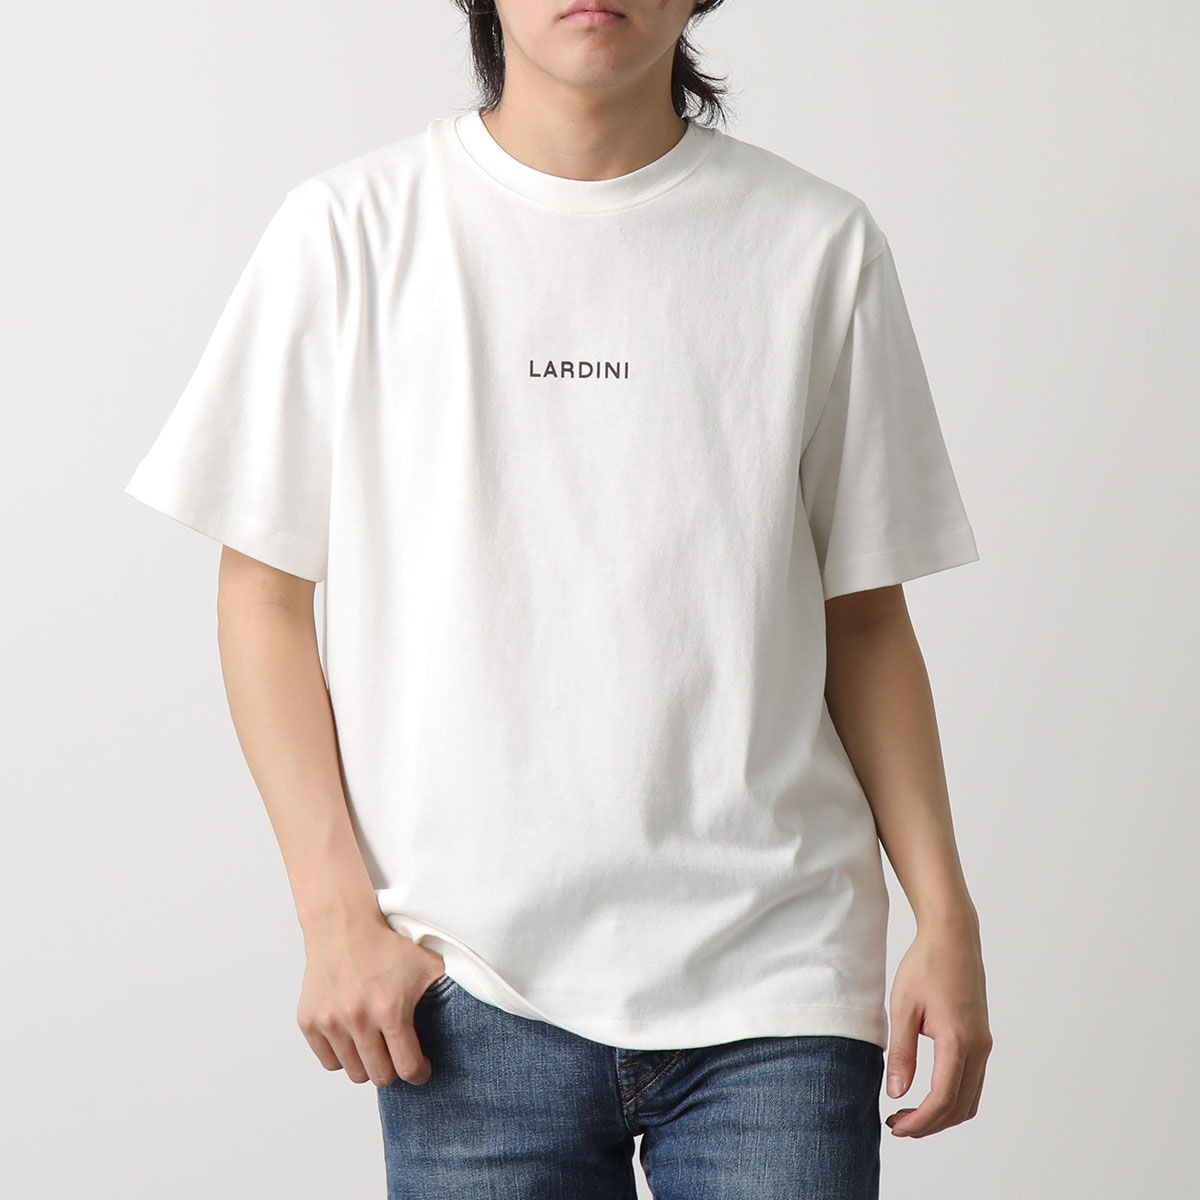 LARDINI ラルディーニ Tシャツ EQLTMC70 EQ62080 メンズ ブートニエール付き 半袖 カットソー クルーネック ロゴ コットン  カラー2色